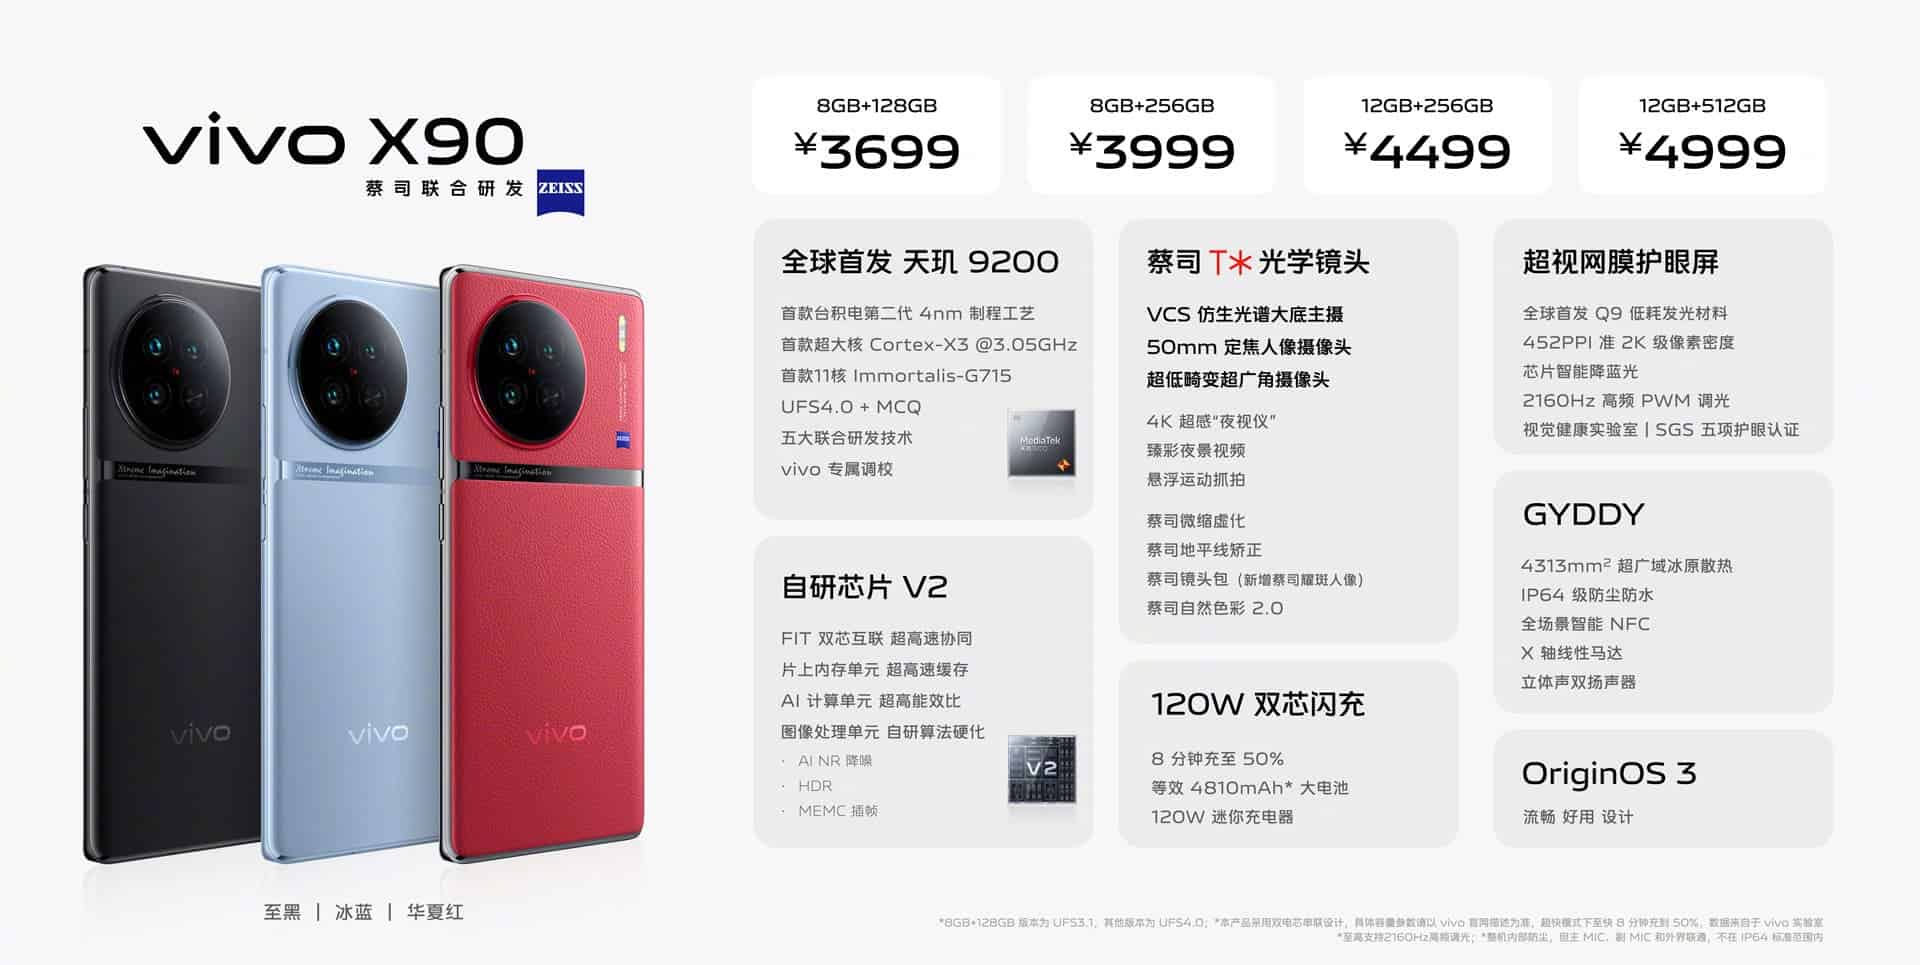 VIVO X90 prices